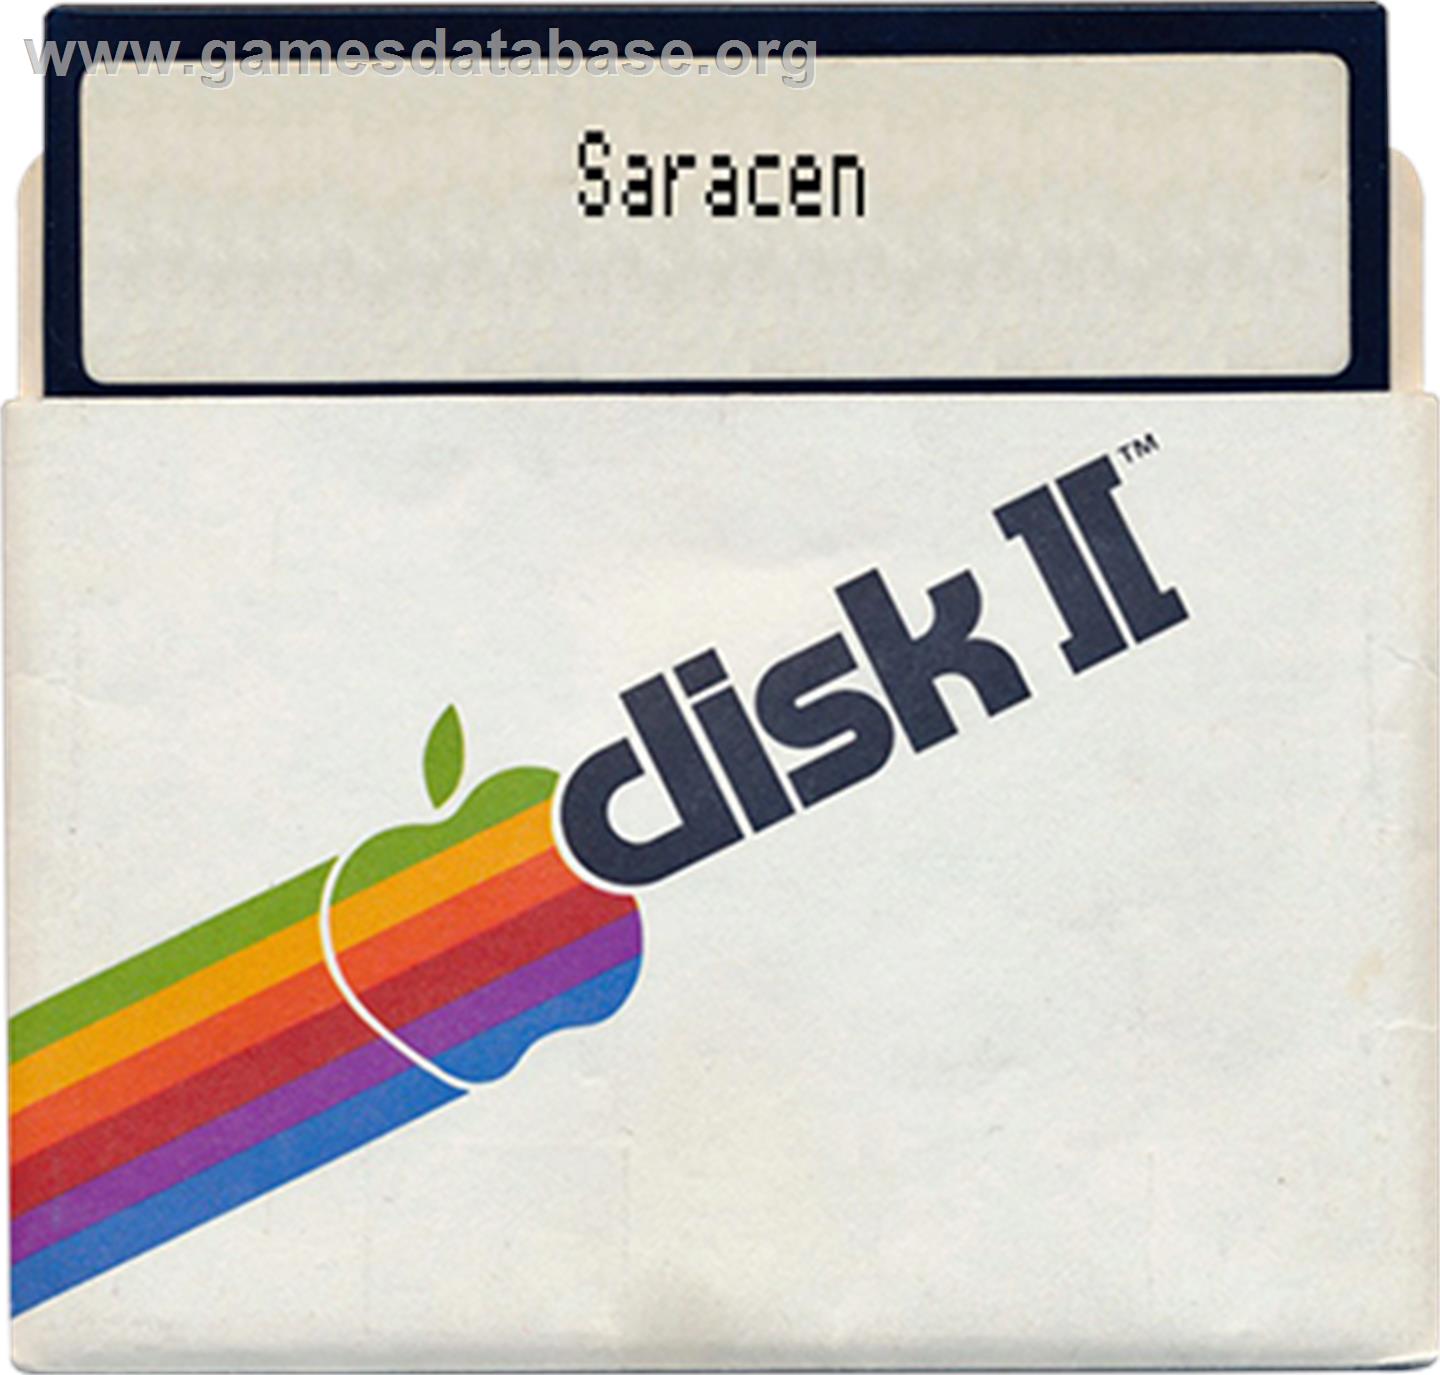 Saracen - Apple II - Artwork - Disc